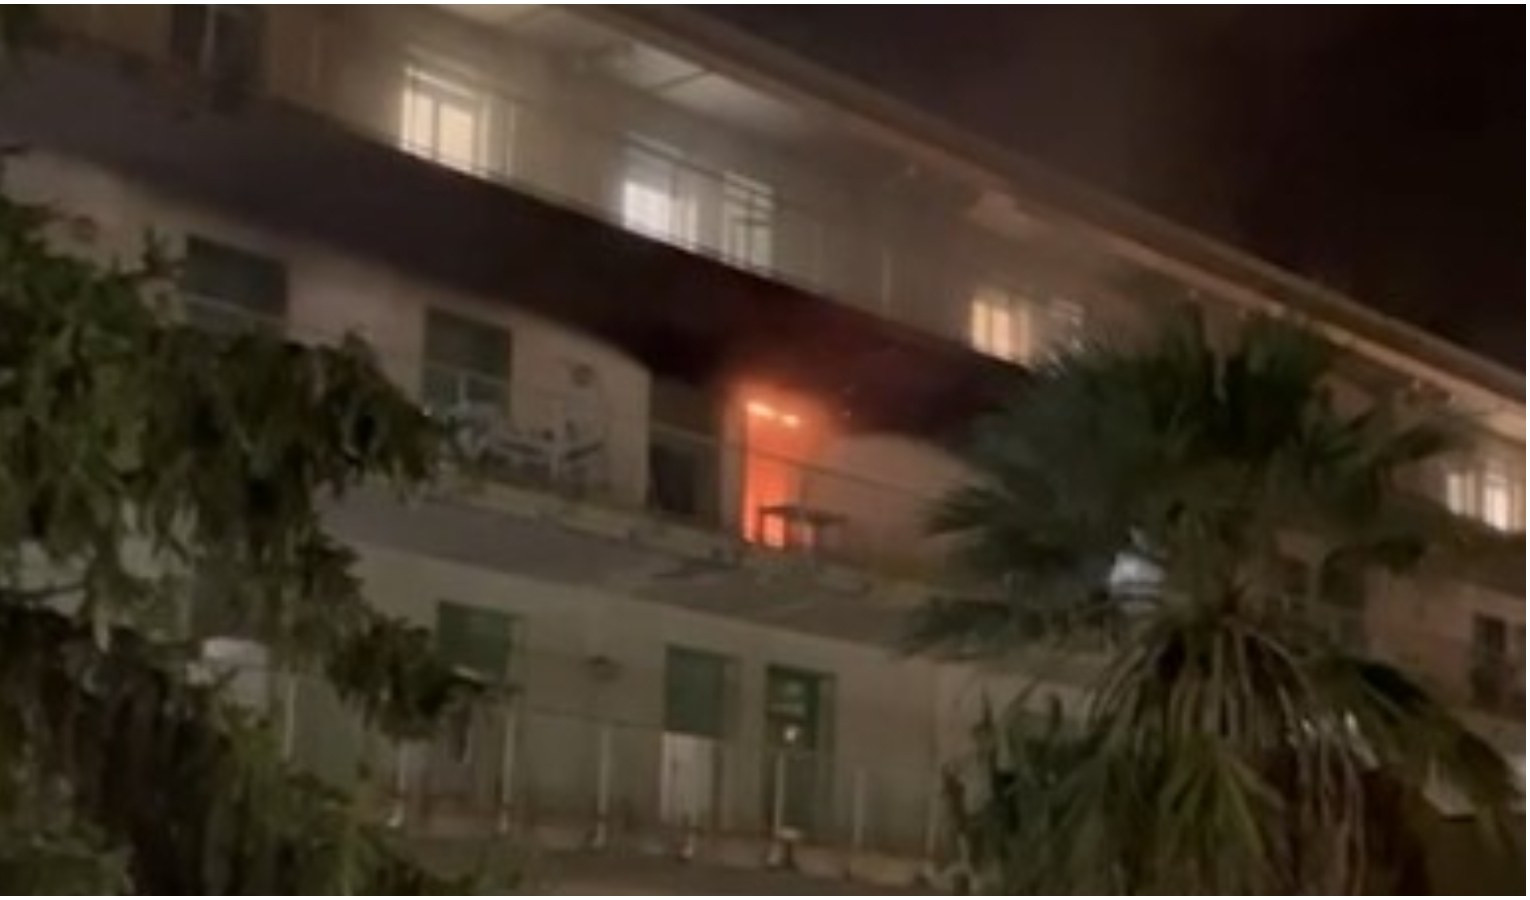 Incendio all'ospedale di Pietra L., 3 intossicati e oltre 70 evacuati